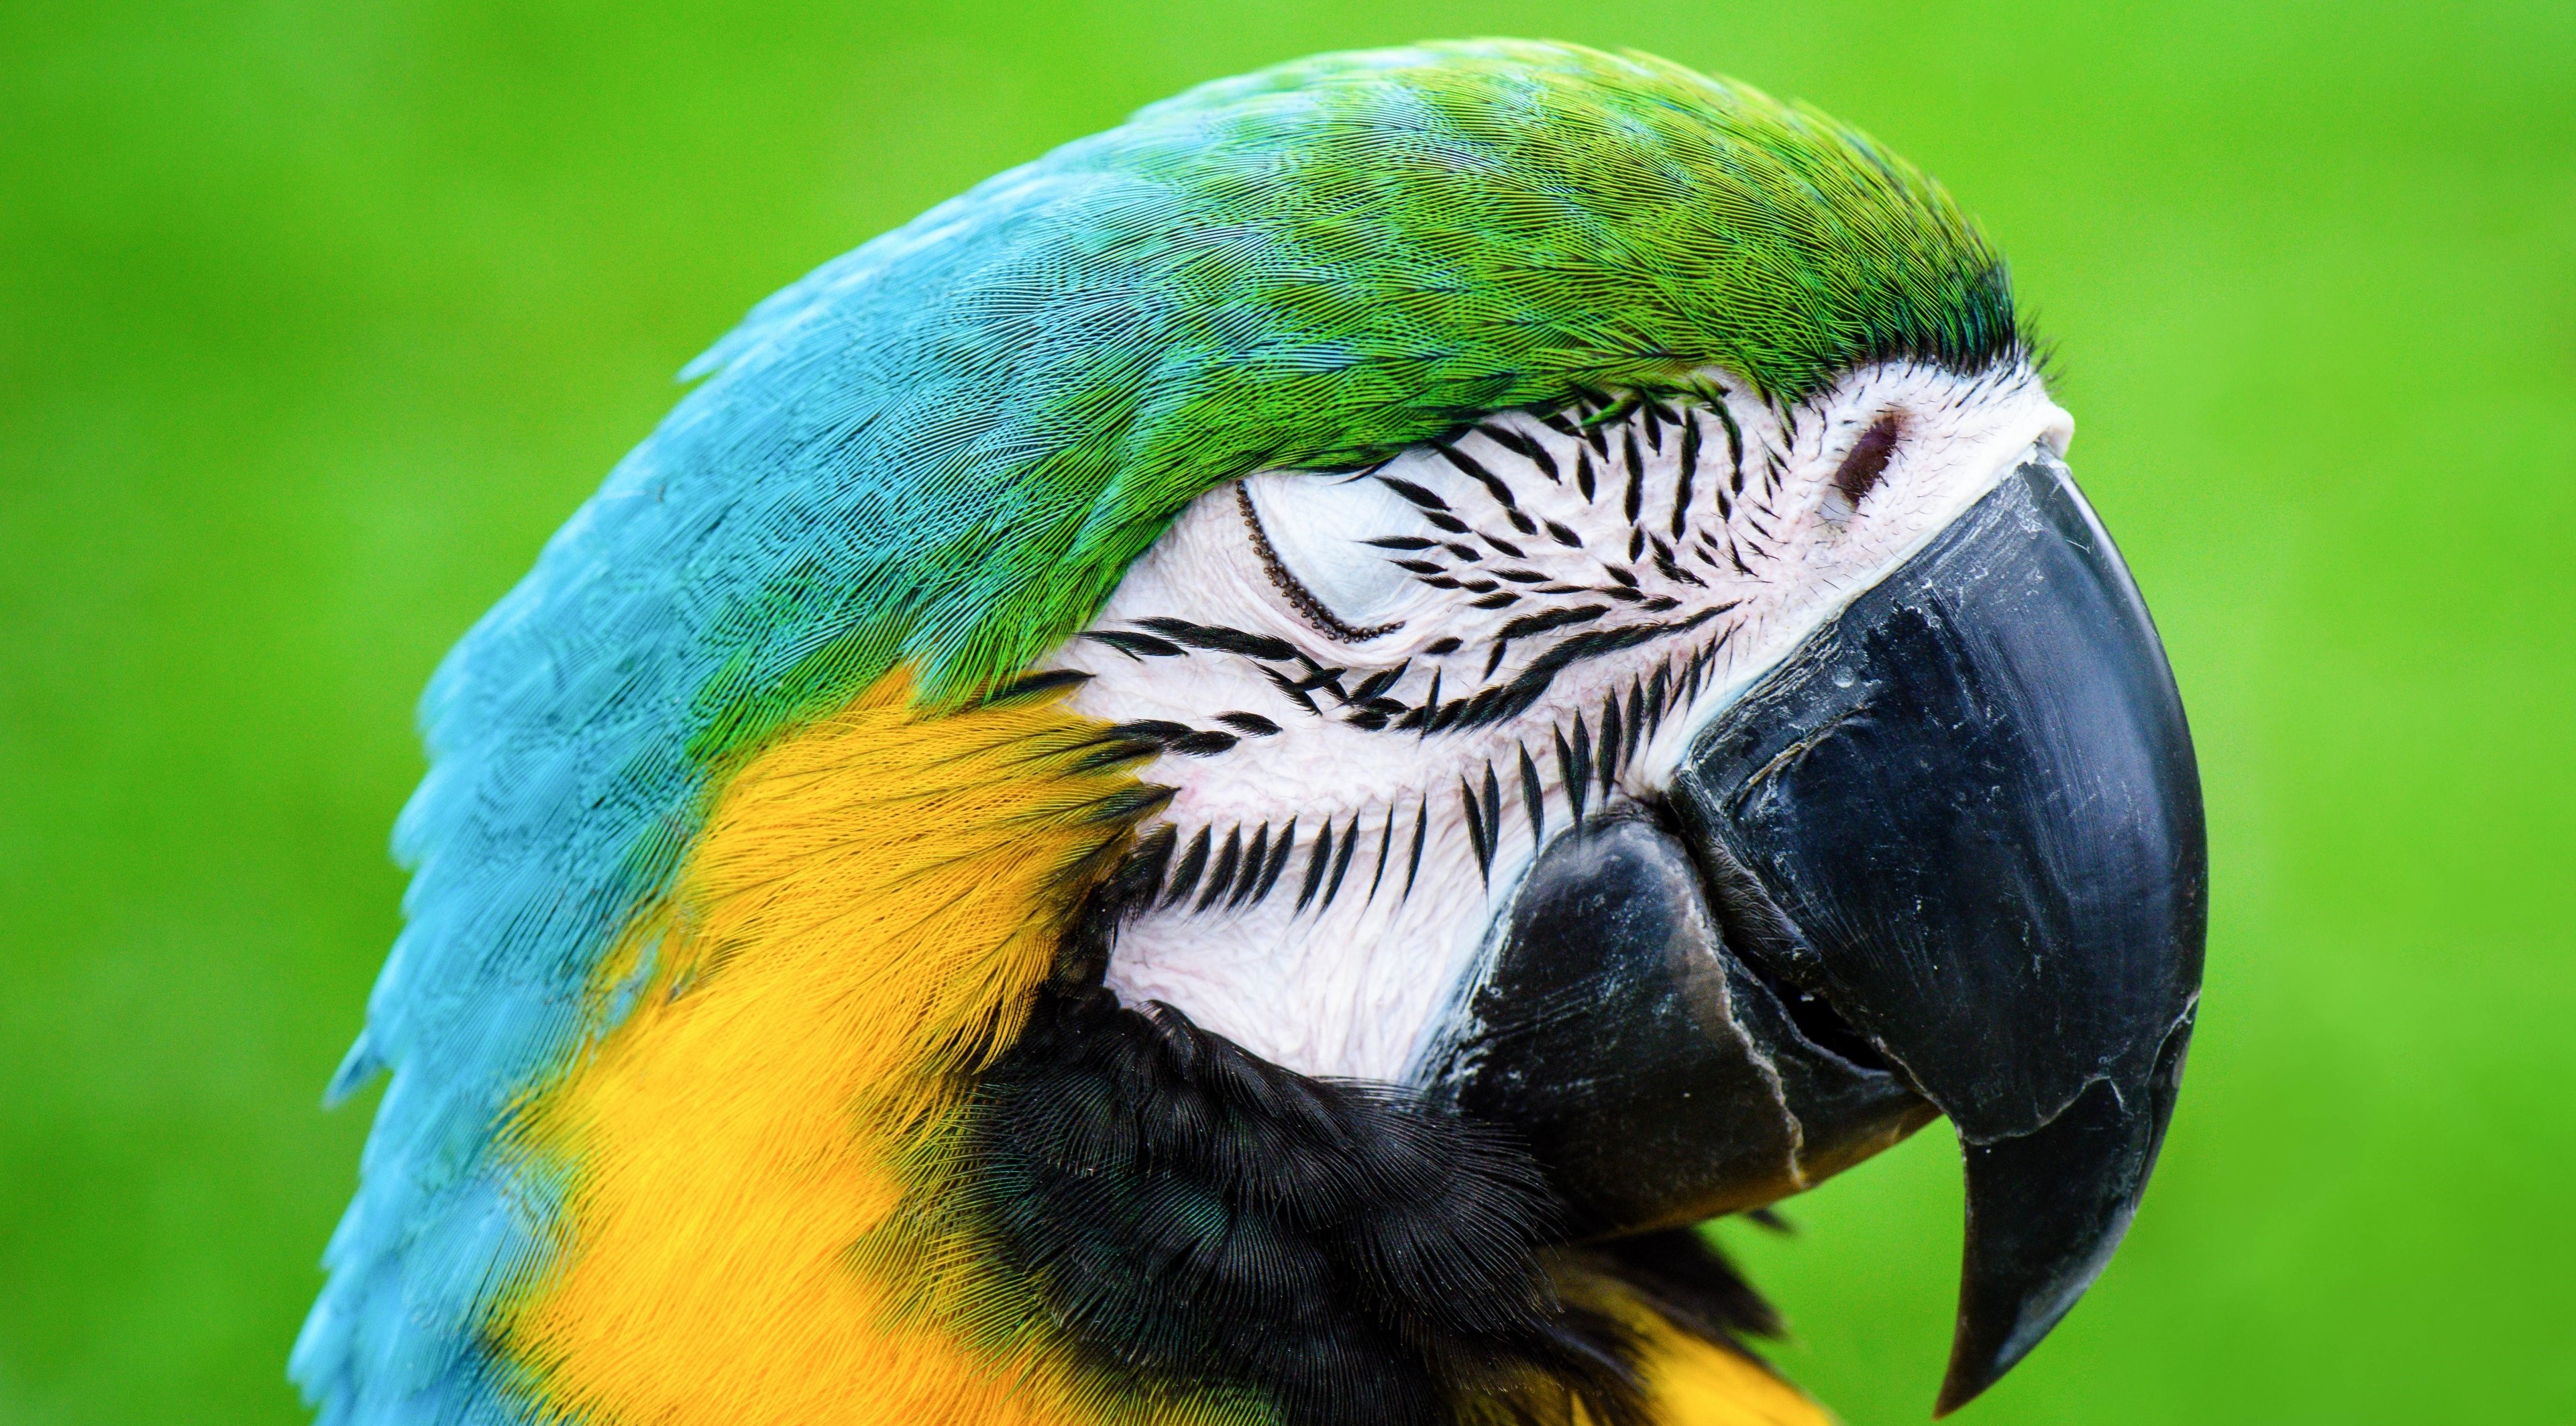 عکس از نزدیک سر طوطی ماکائو به رنگ سبز آبی زرد بسیار تماشایی